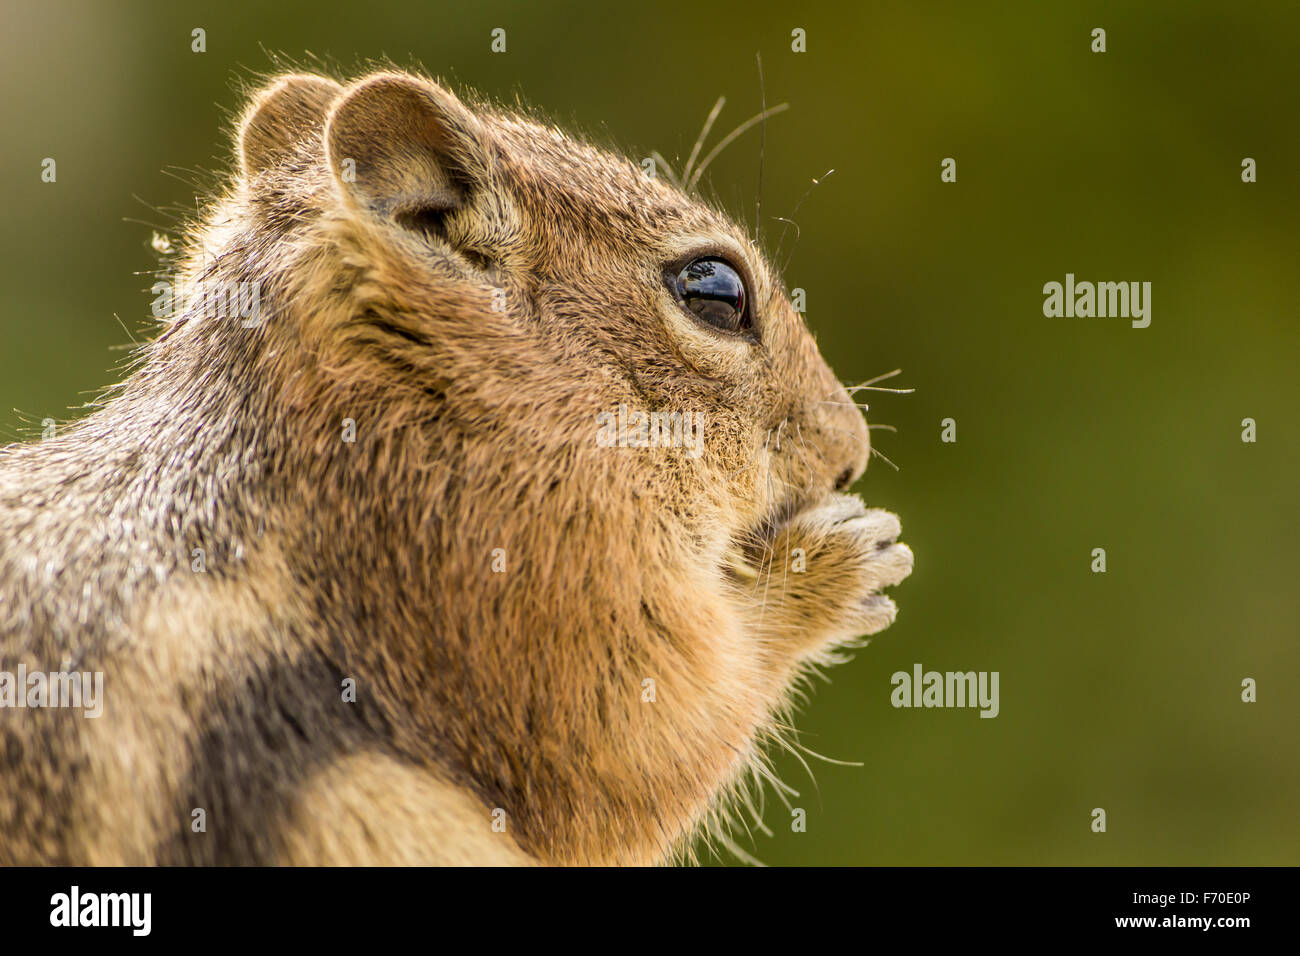 Ein Eichhörnchen Essen eine Nuss - Nahaufnahme Stockfoto